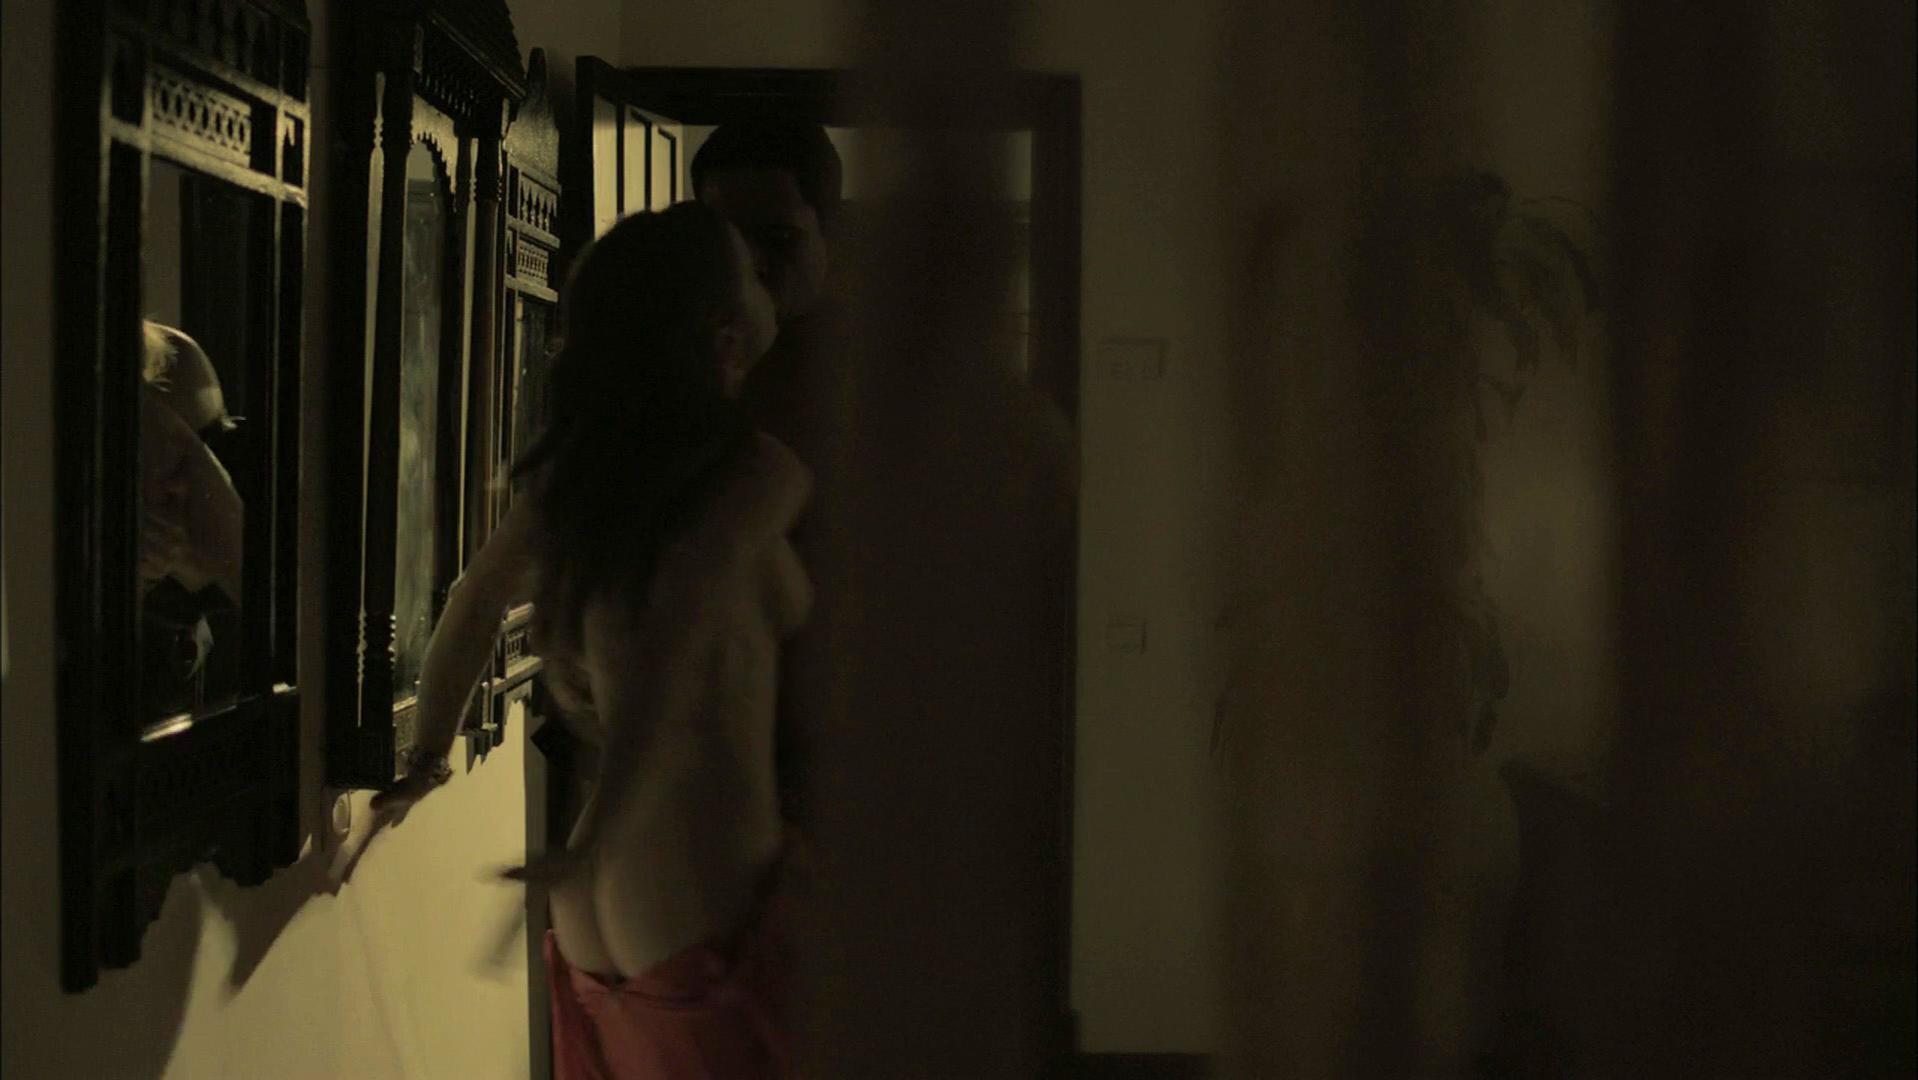 Melissa George nude - Hunted s01 (2012)